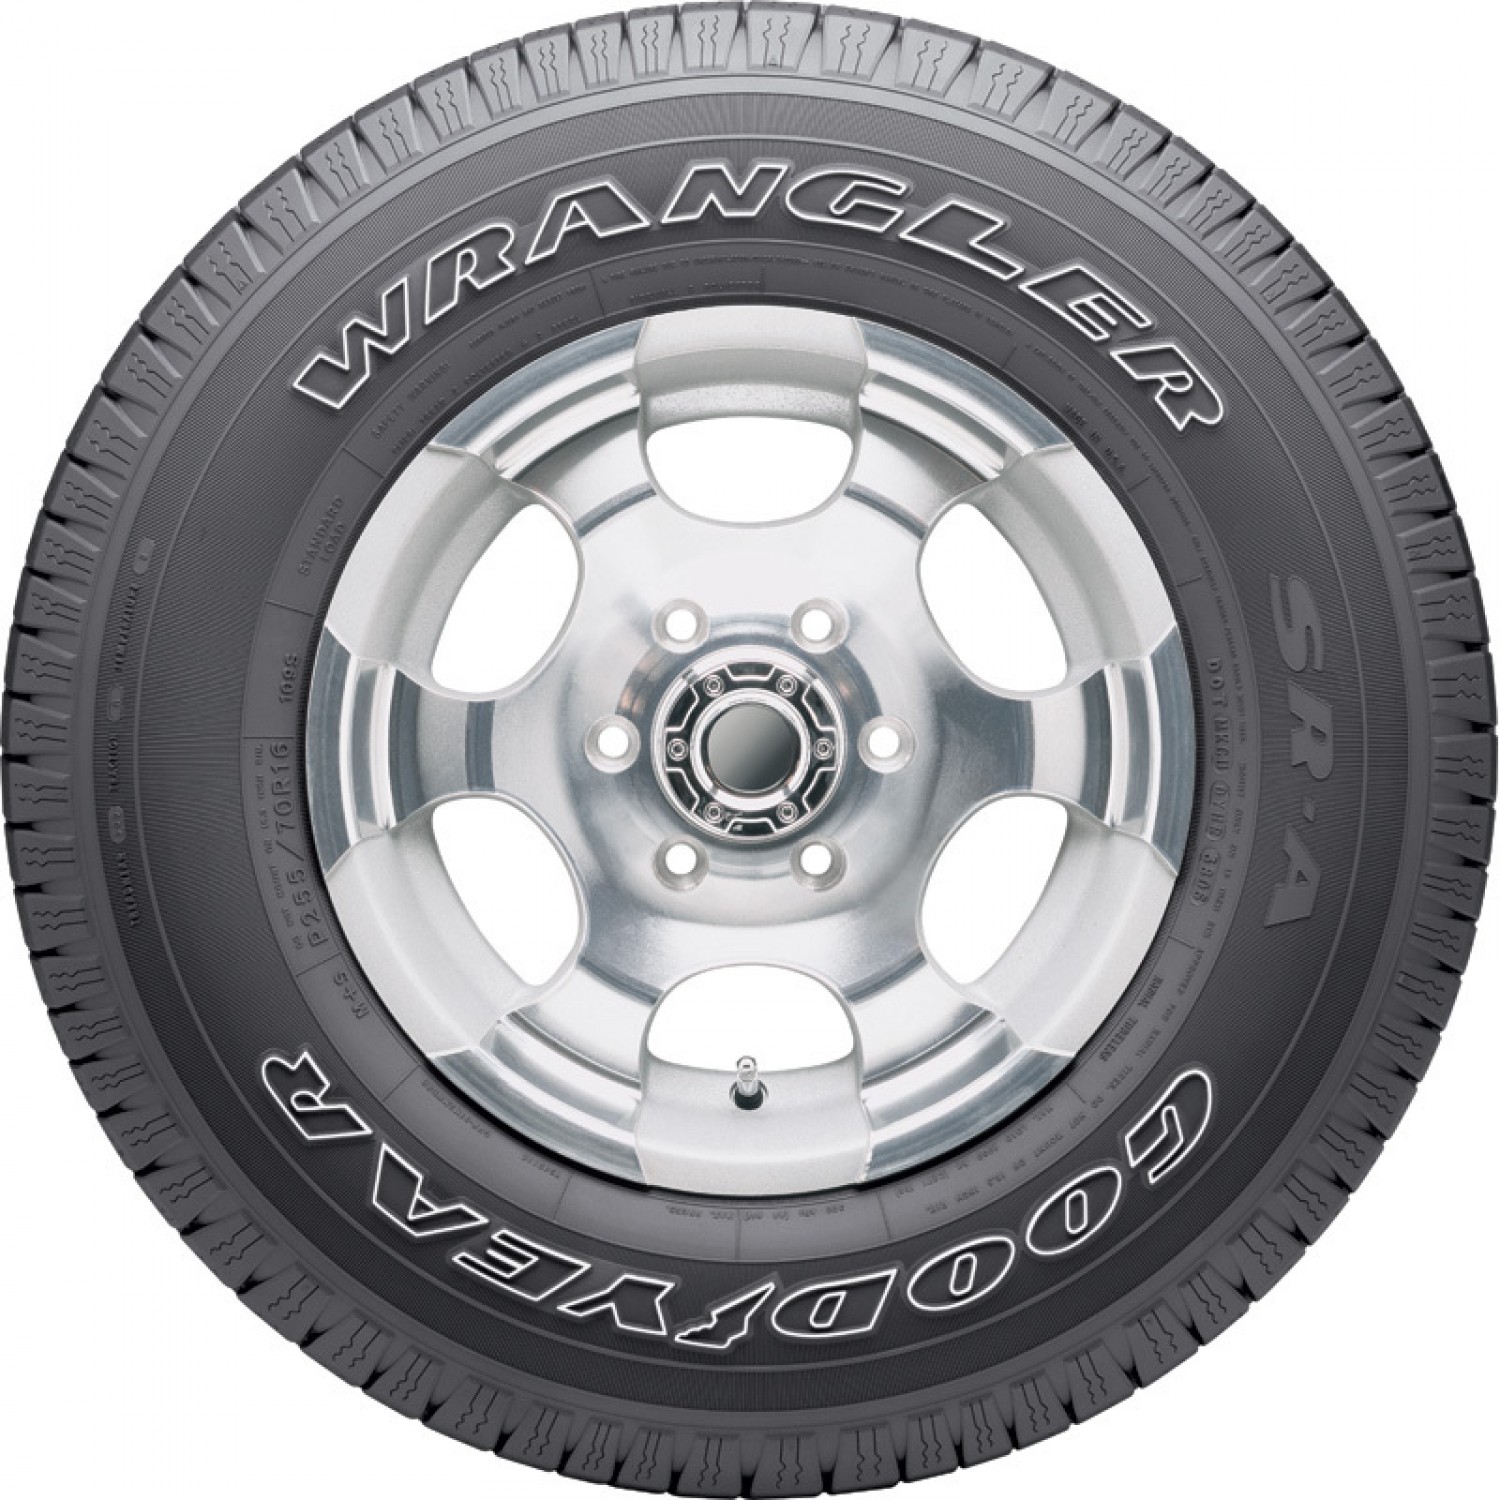 Goodyear Wrangler SR-A Outlined White Letters Tire (P275/60R20 114S)  vzn121211